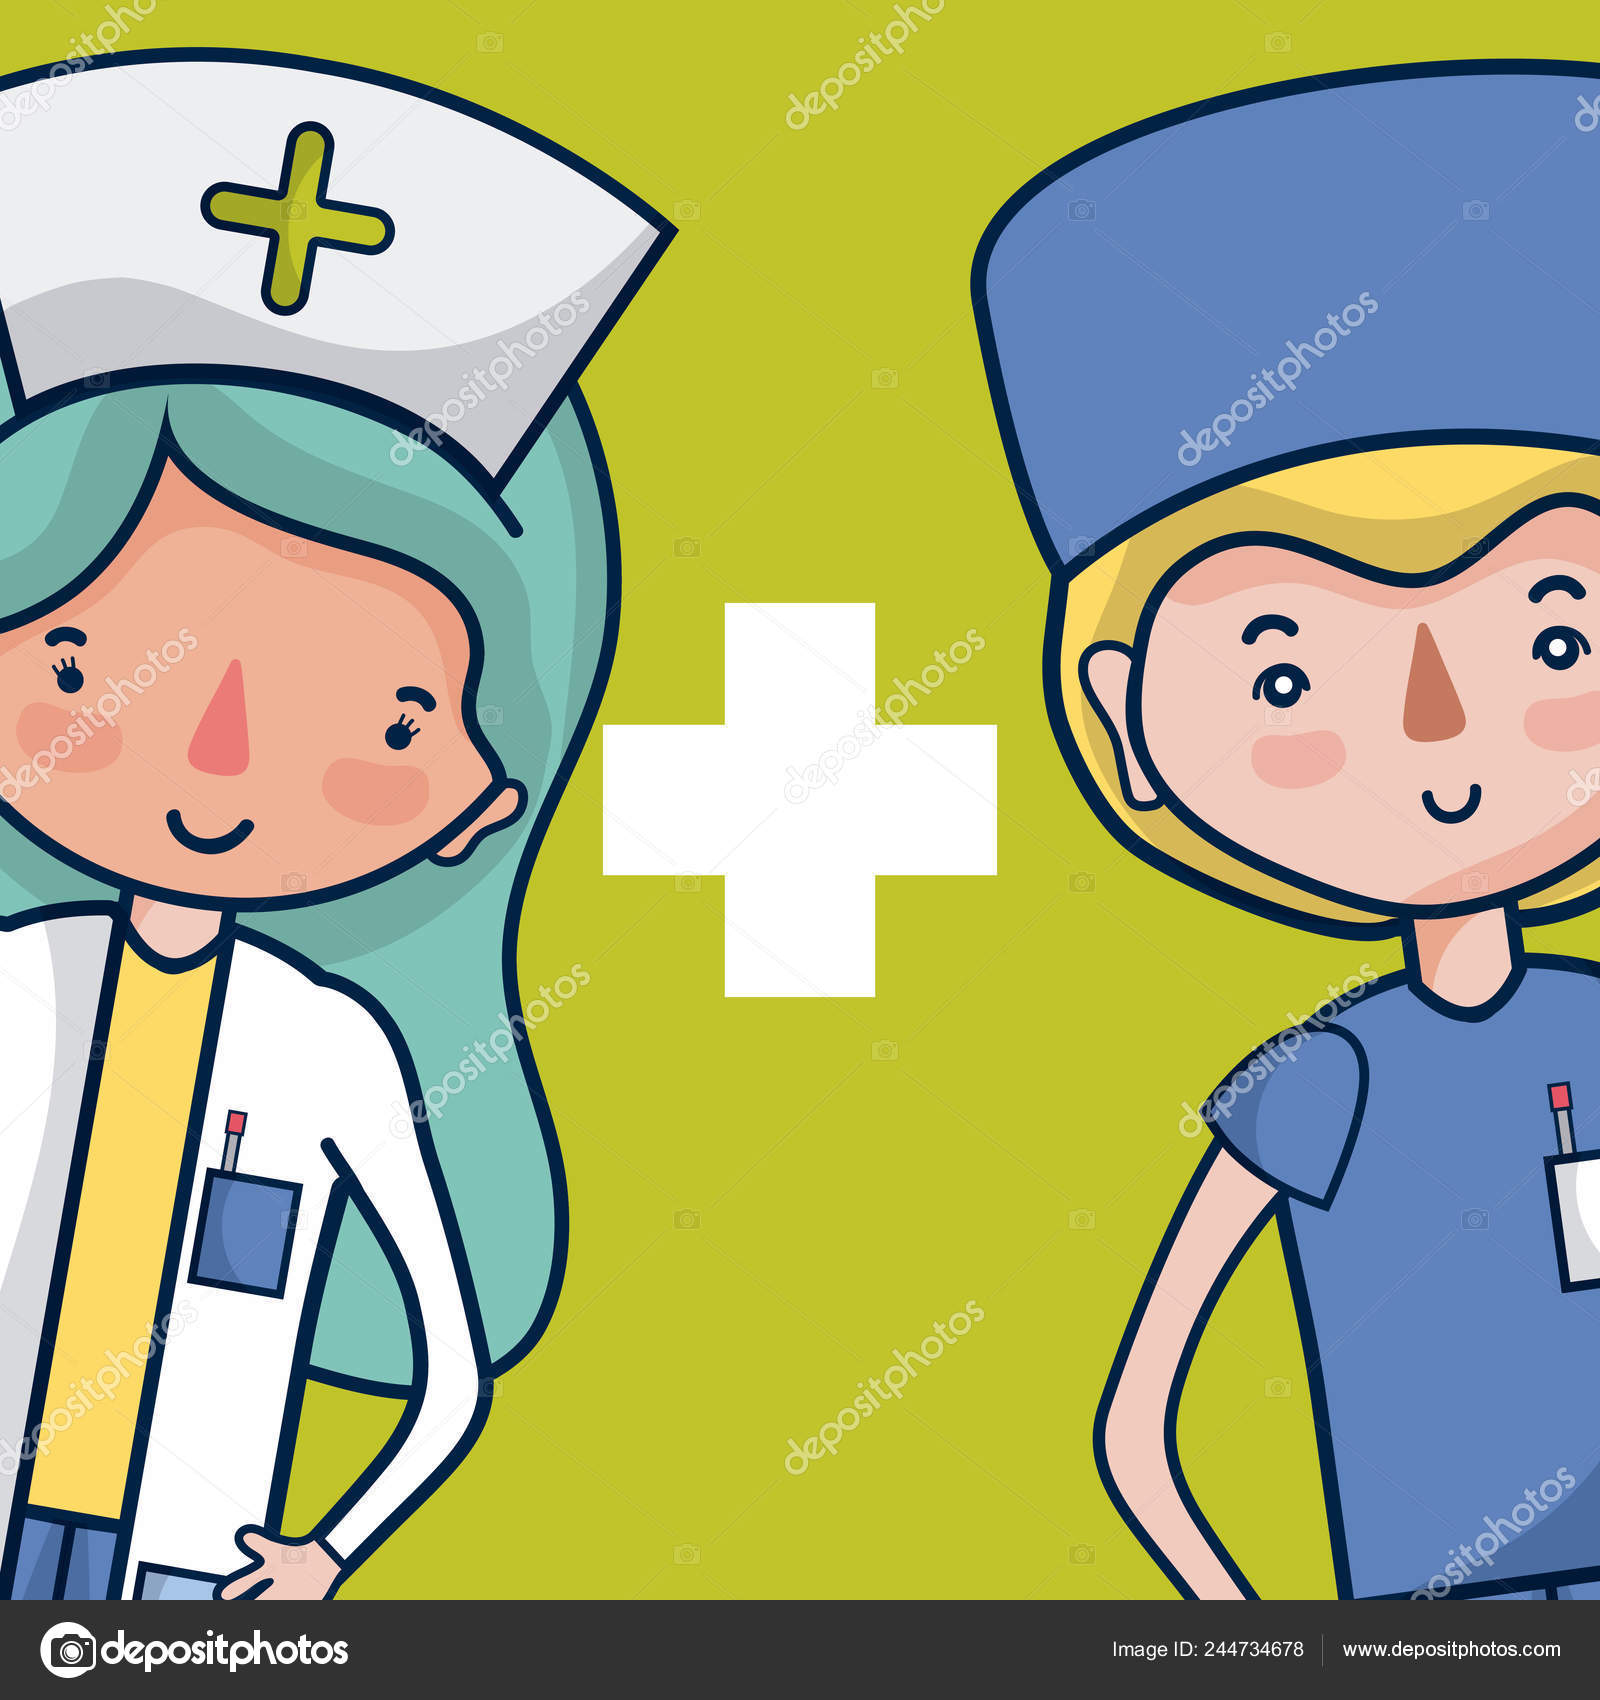 Desenho Manual Do Vetor Médico E Enfermeiro Ilustração do Vetor